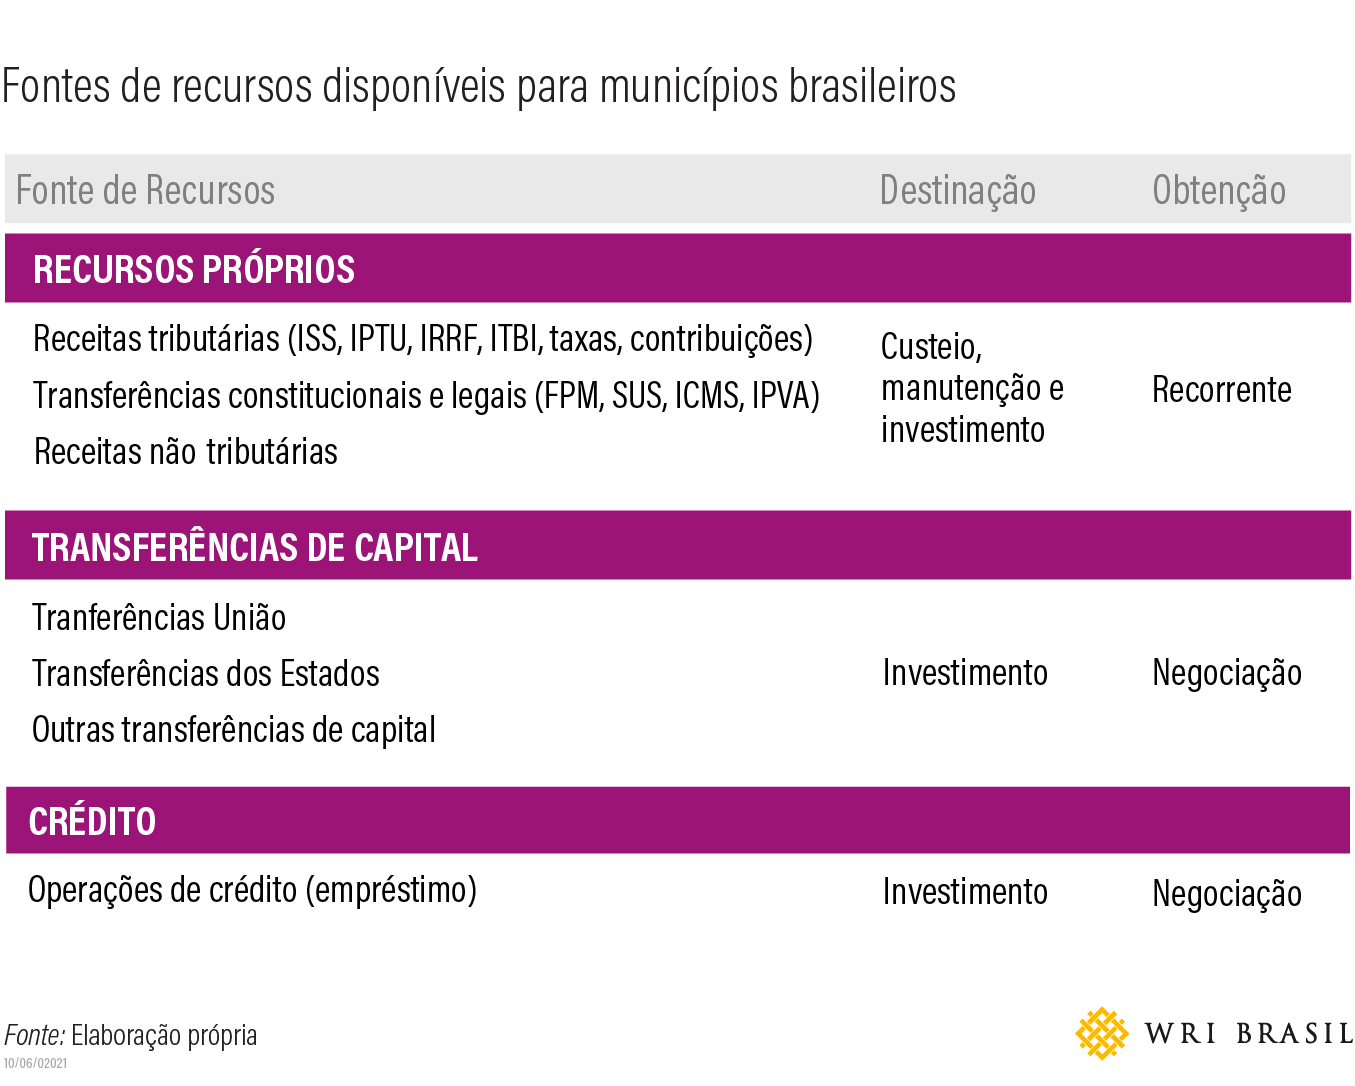 <p>tabela com fontes de recursos disponíveis pra investimentos municipais</p>